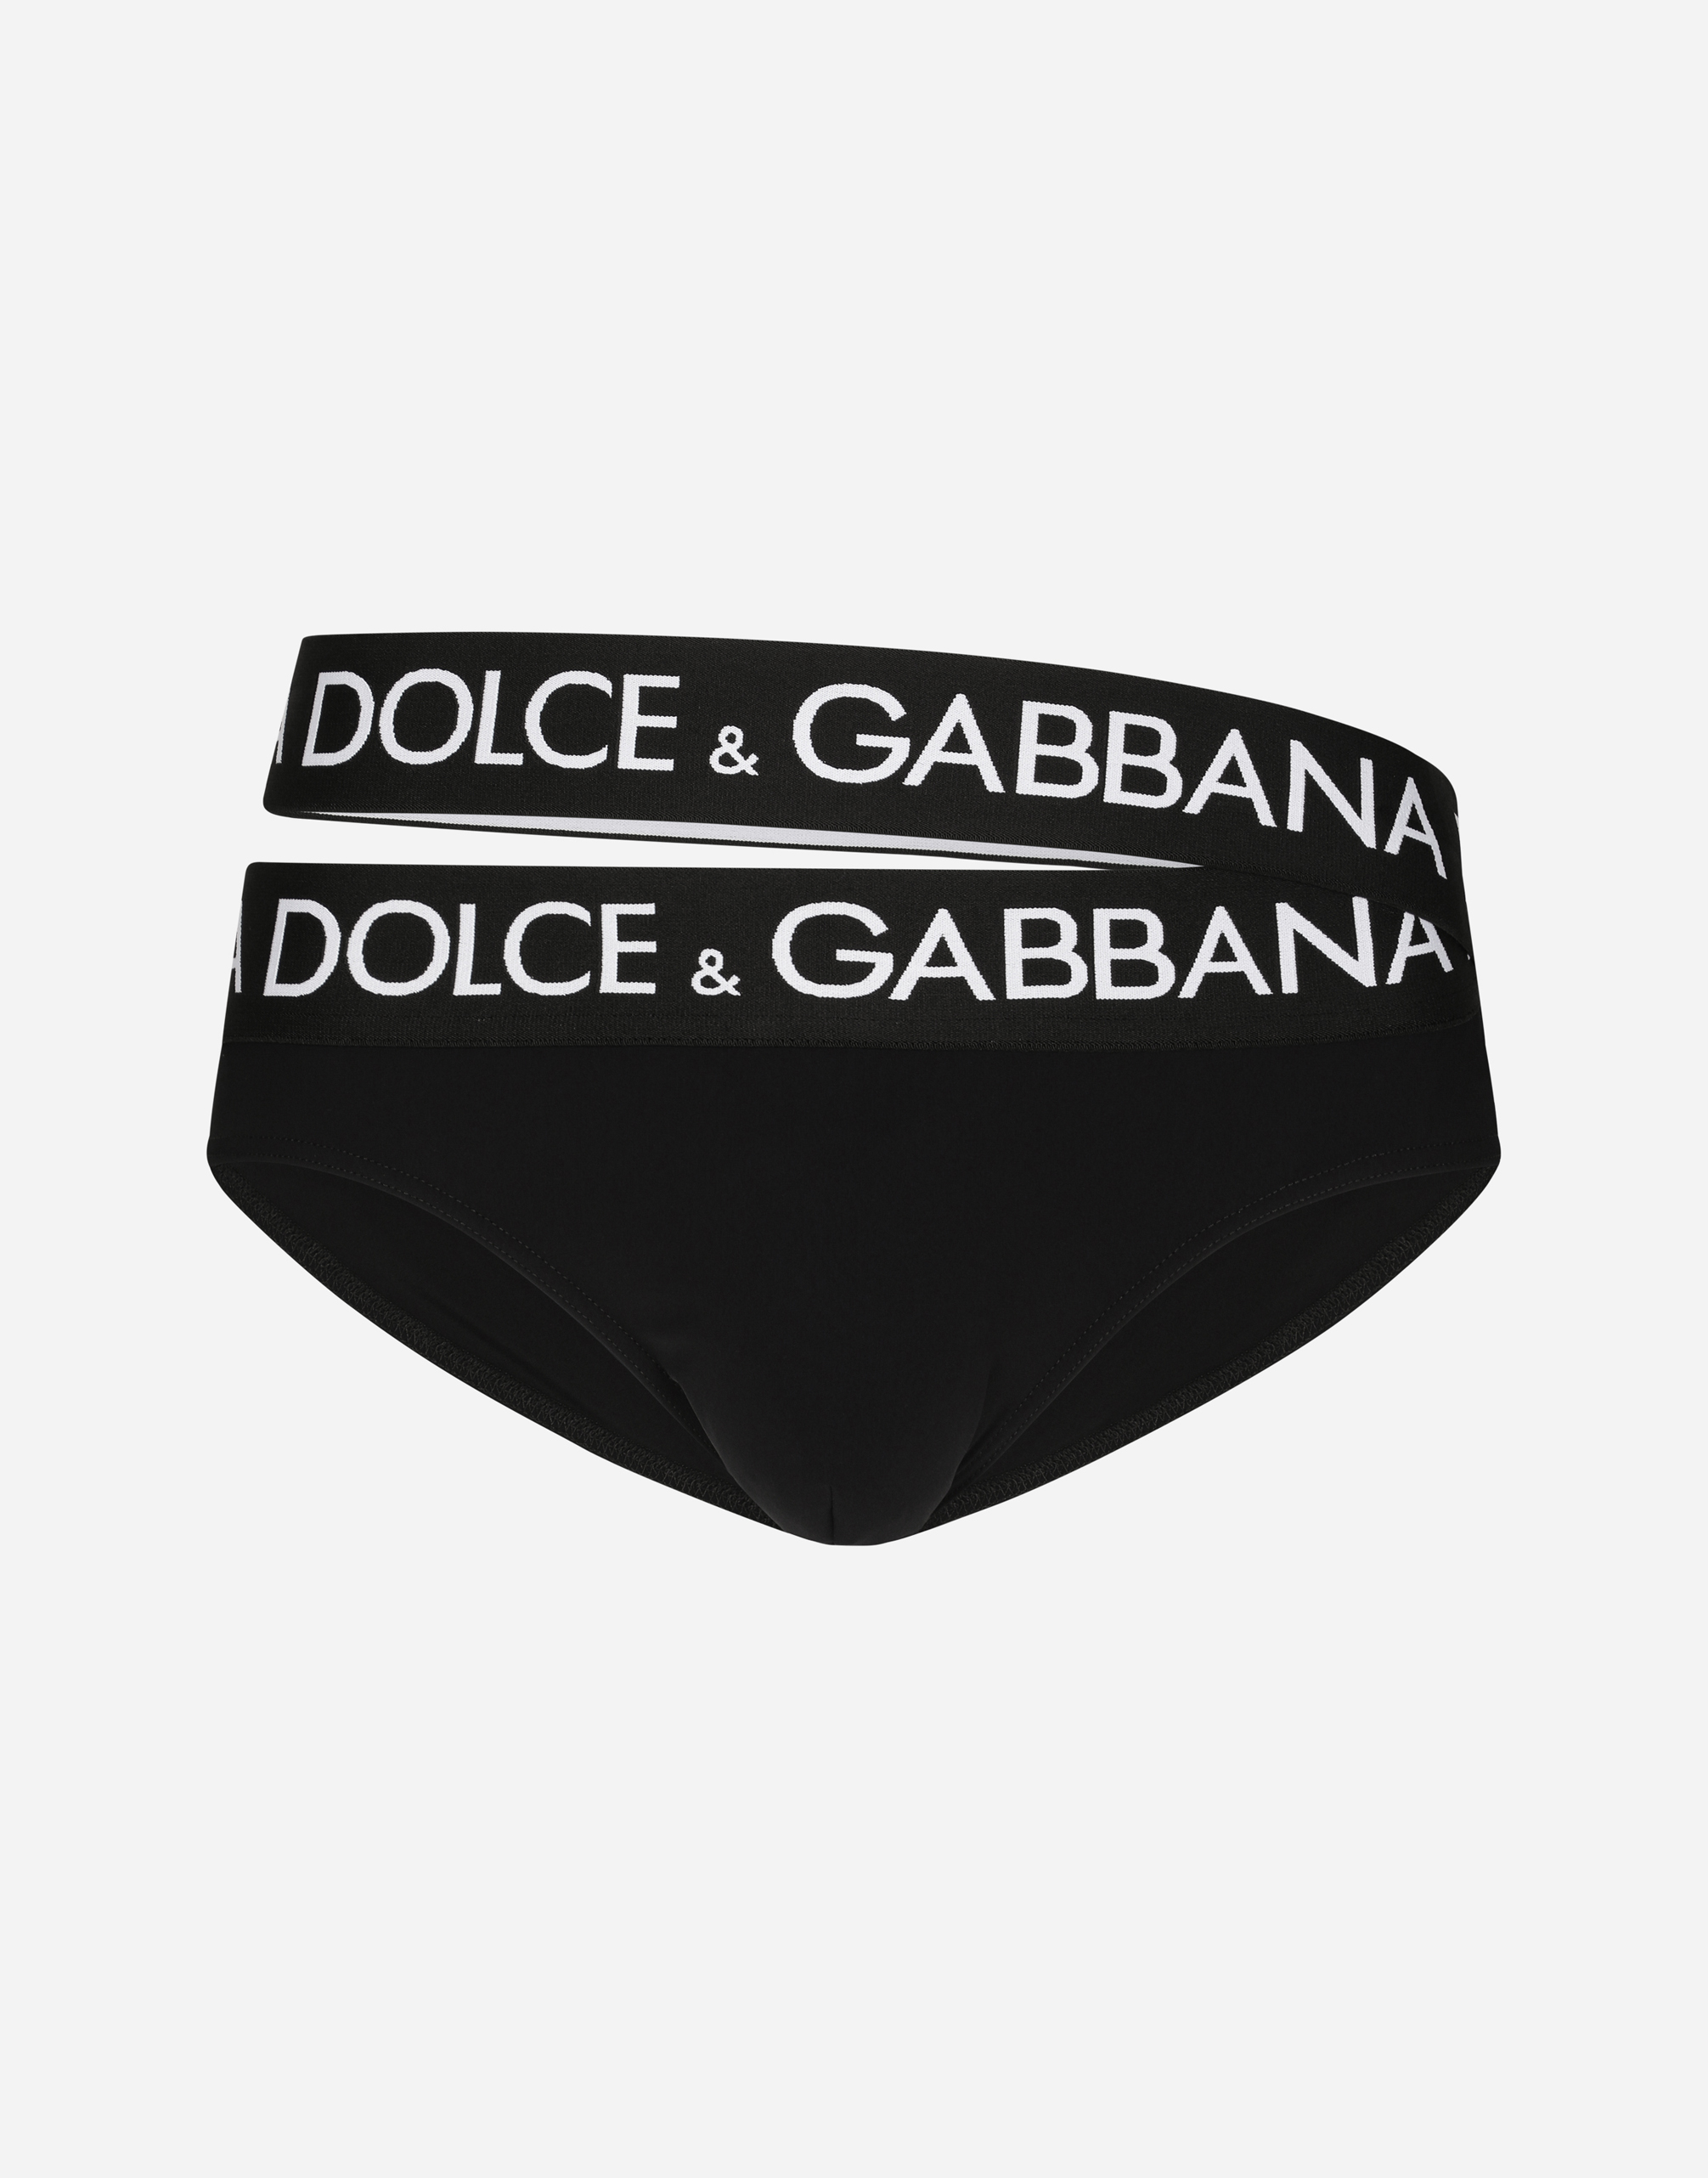 Dolce & Gabbana Badeslip Hoch Ausgeschnitten Mit Doppeltem Logobund In Black